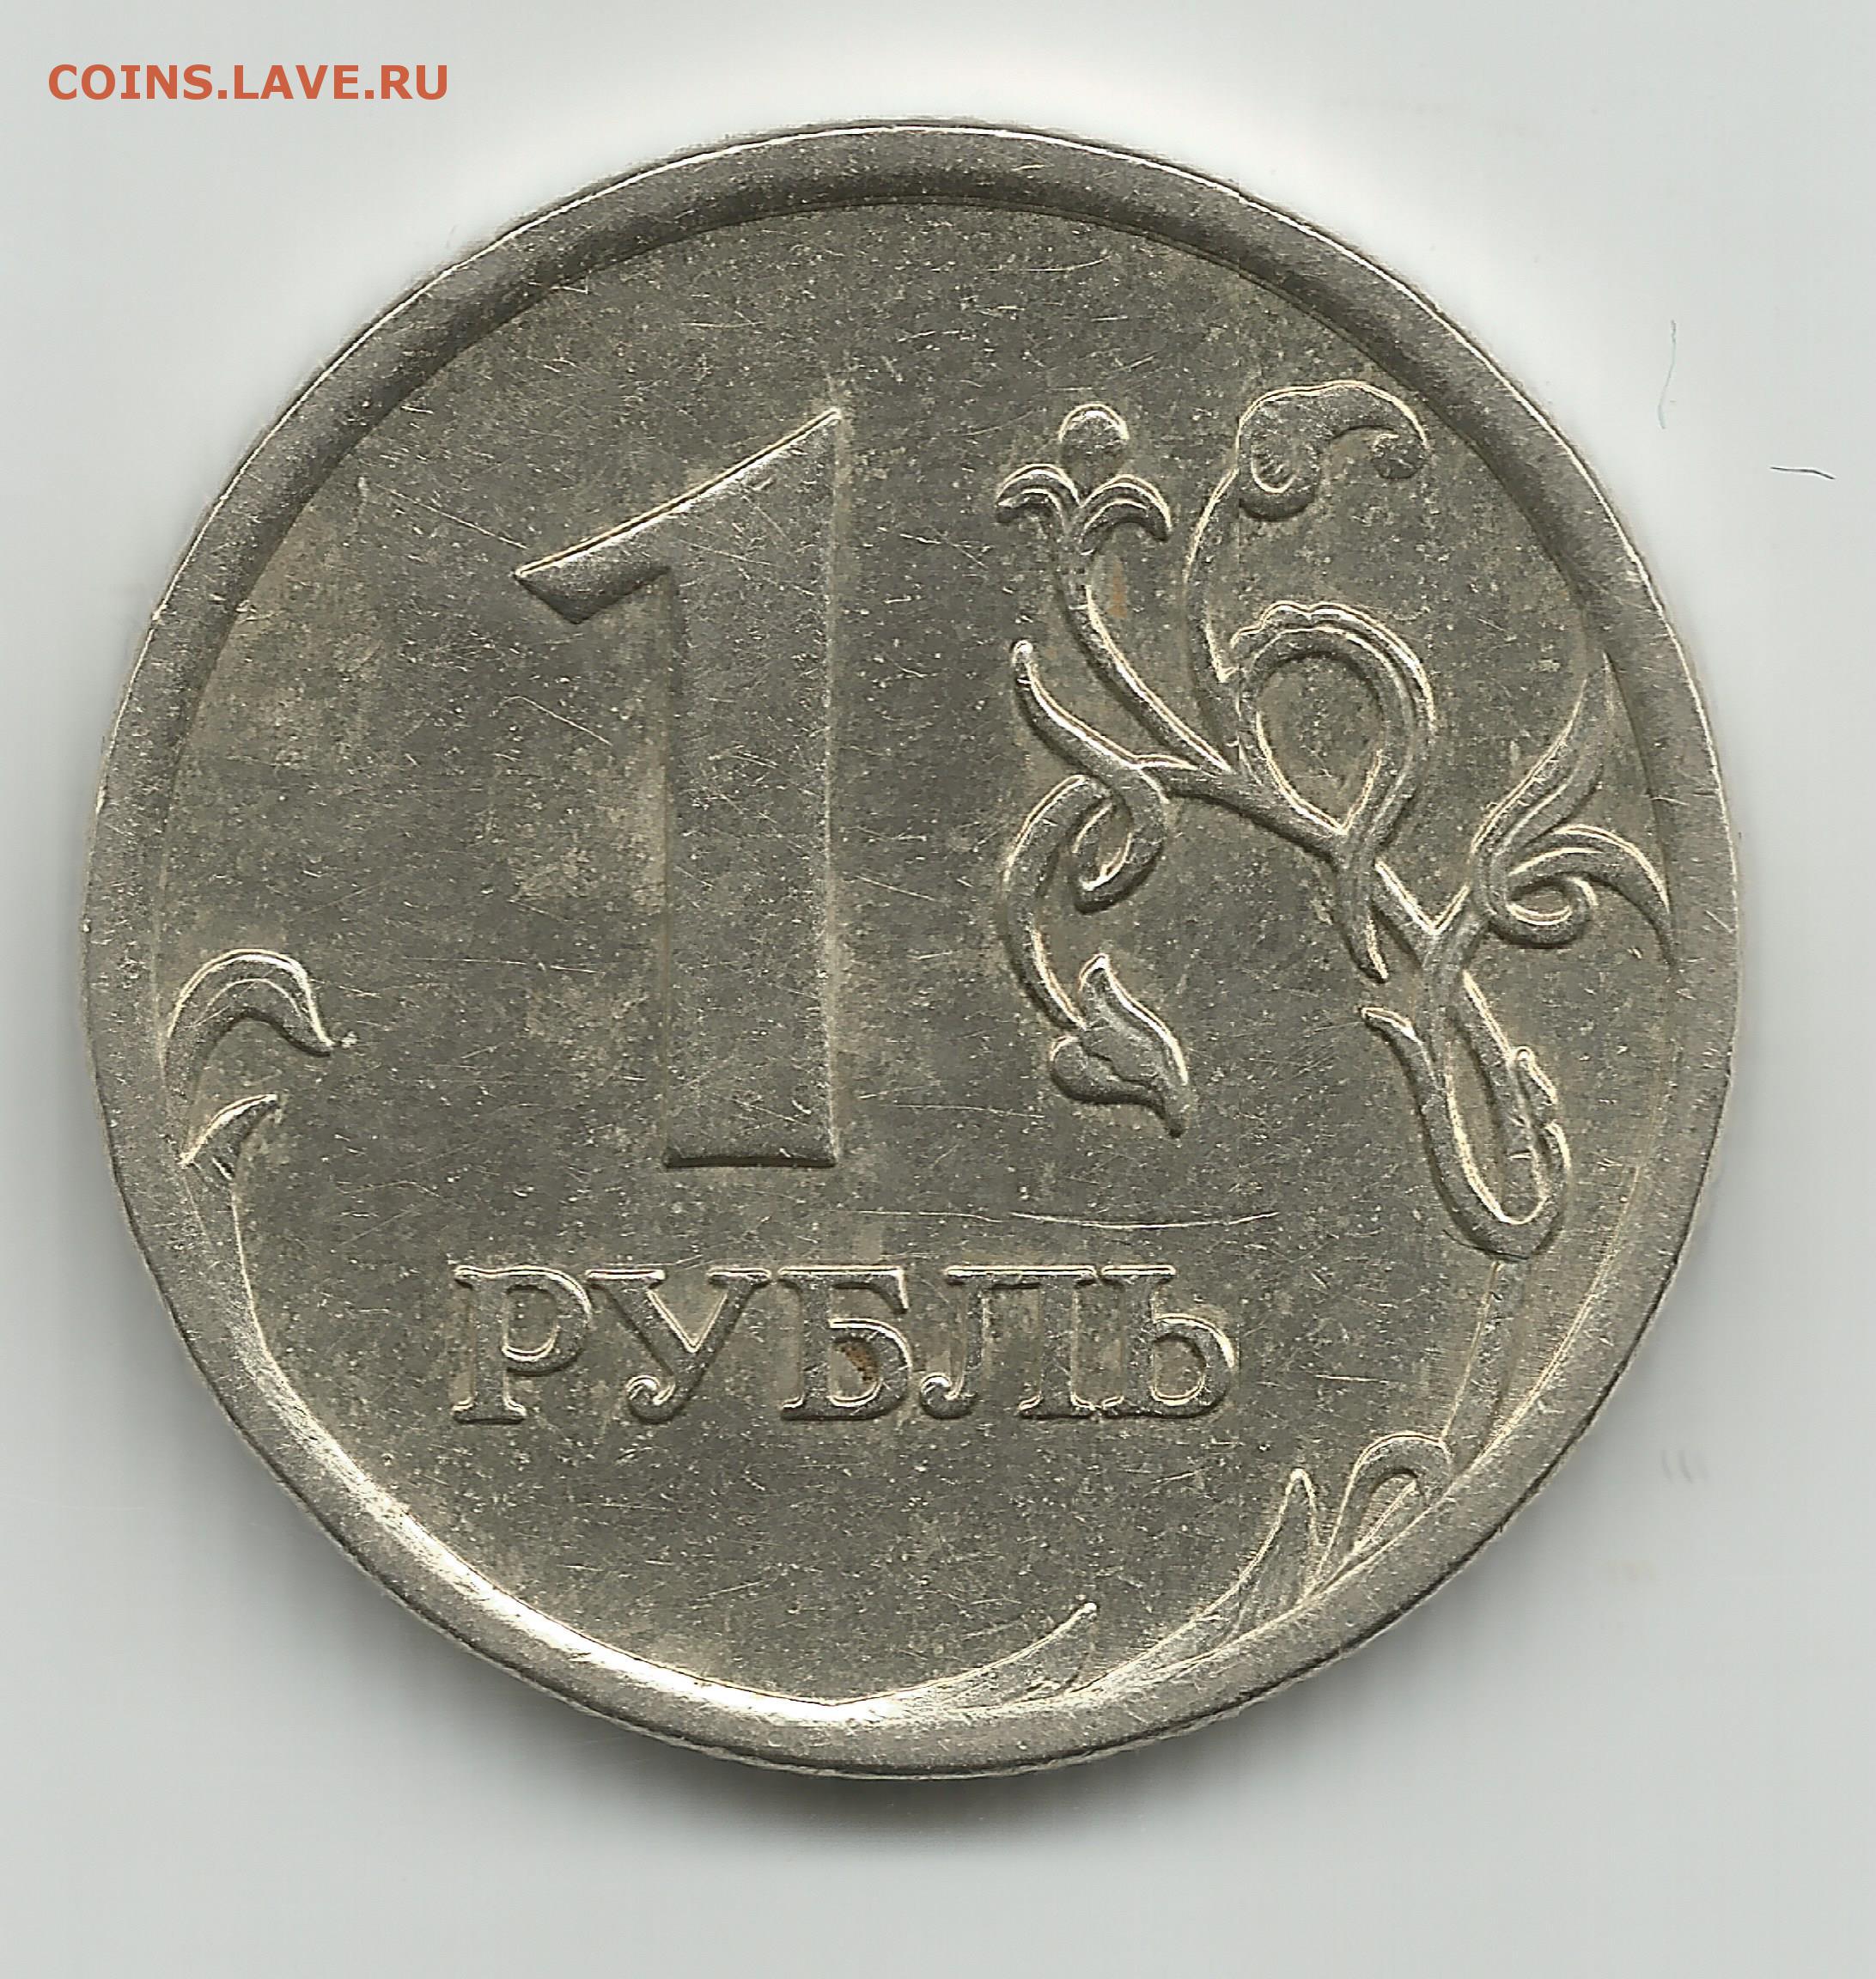 На рубле без руб. Россия 1 рубль 2005 год (СПМД). Монета 1 рубль. Монета 1 рубль на прозрачном фоне. 1 Рубль без фона.